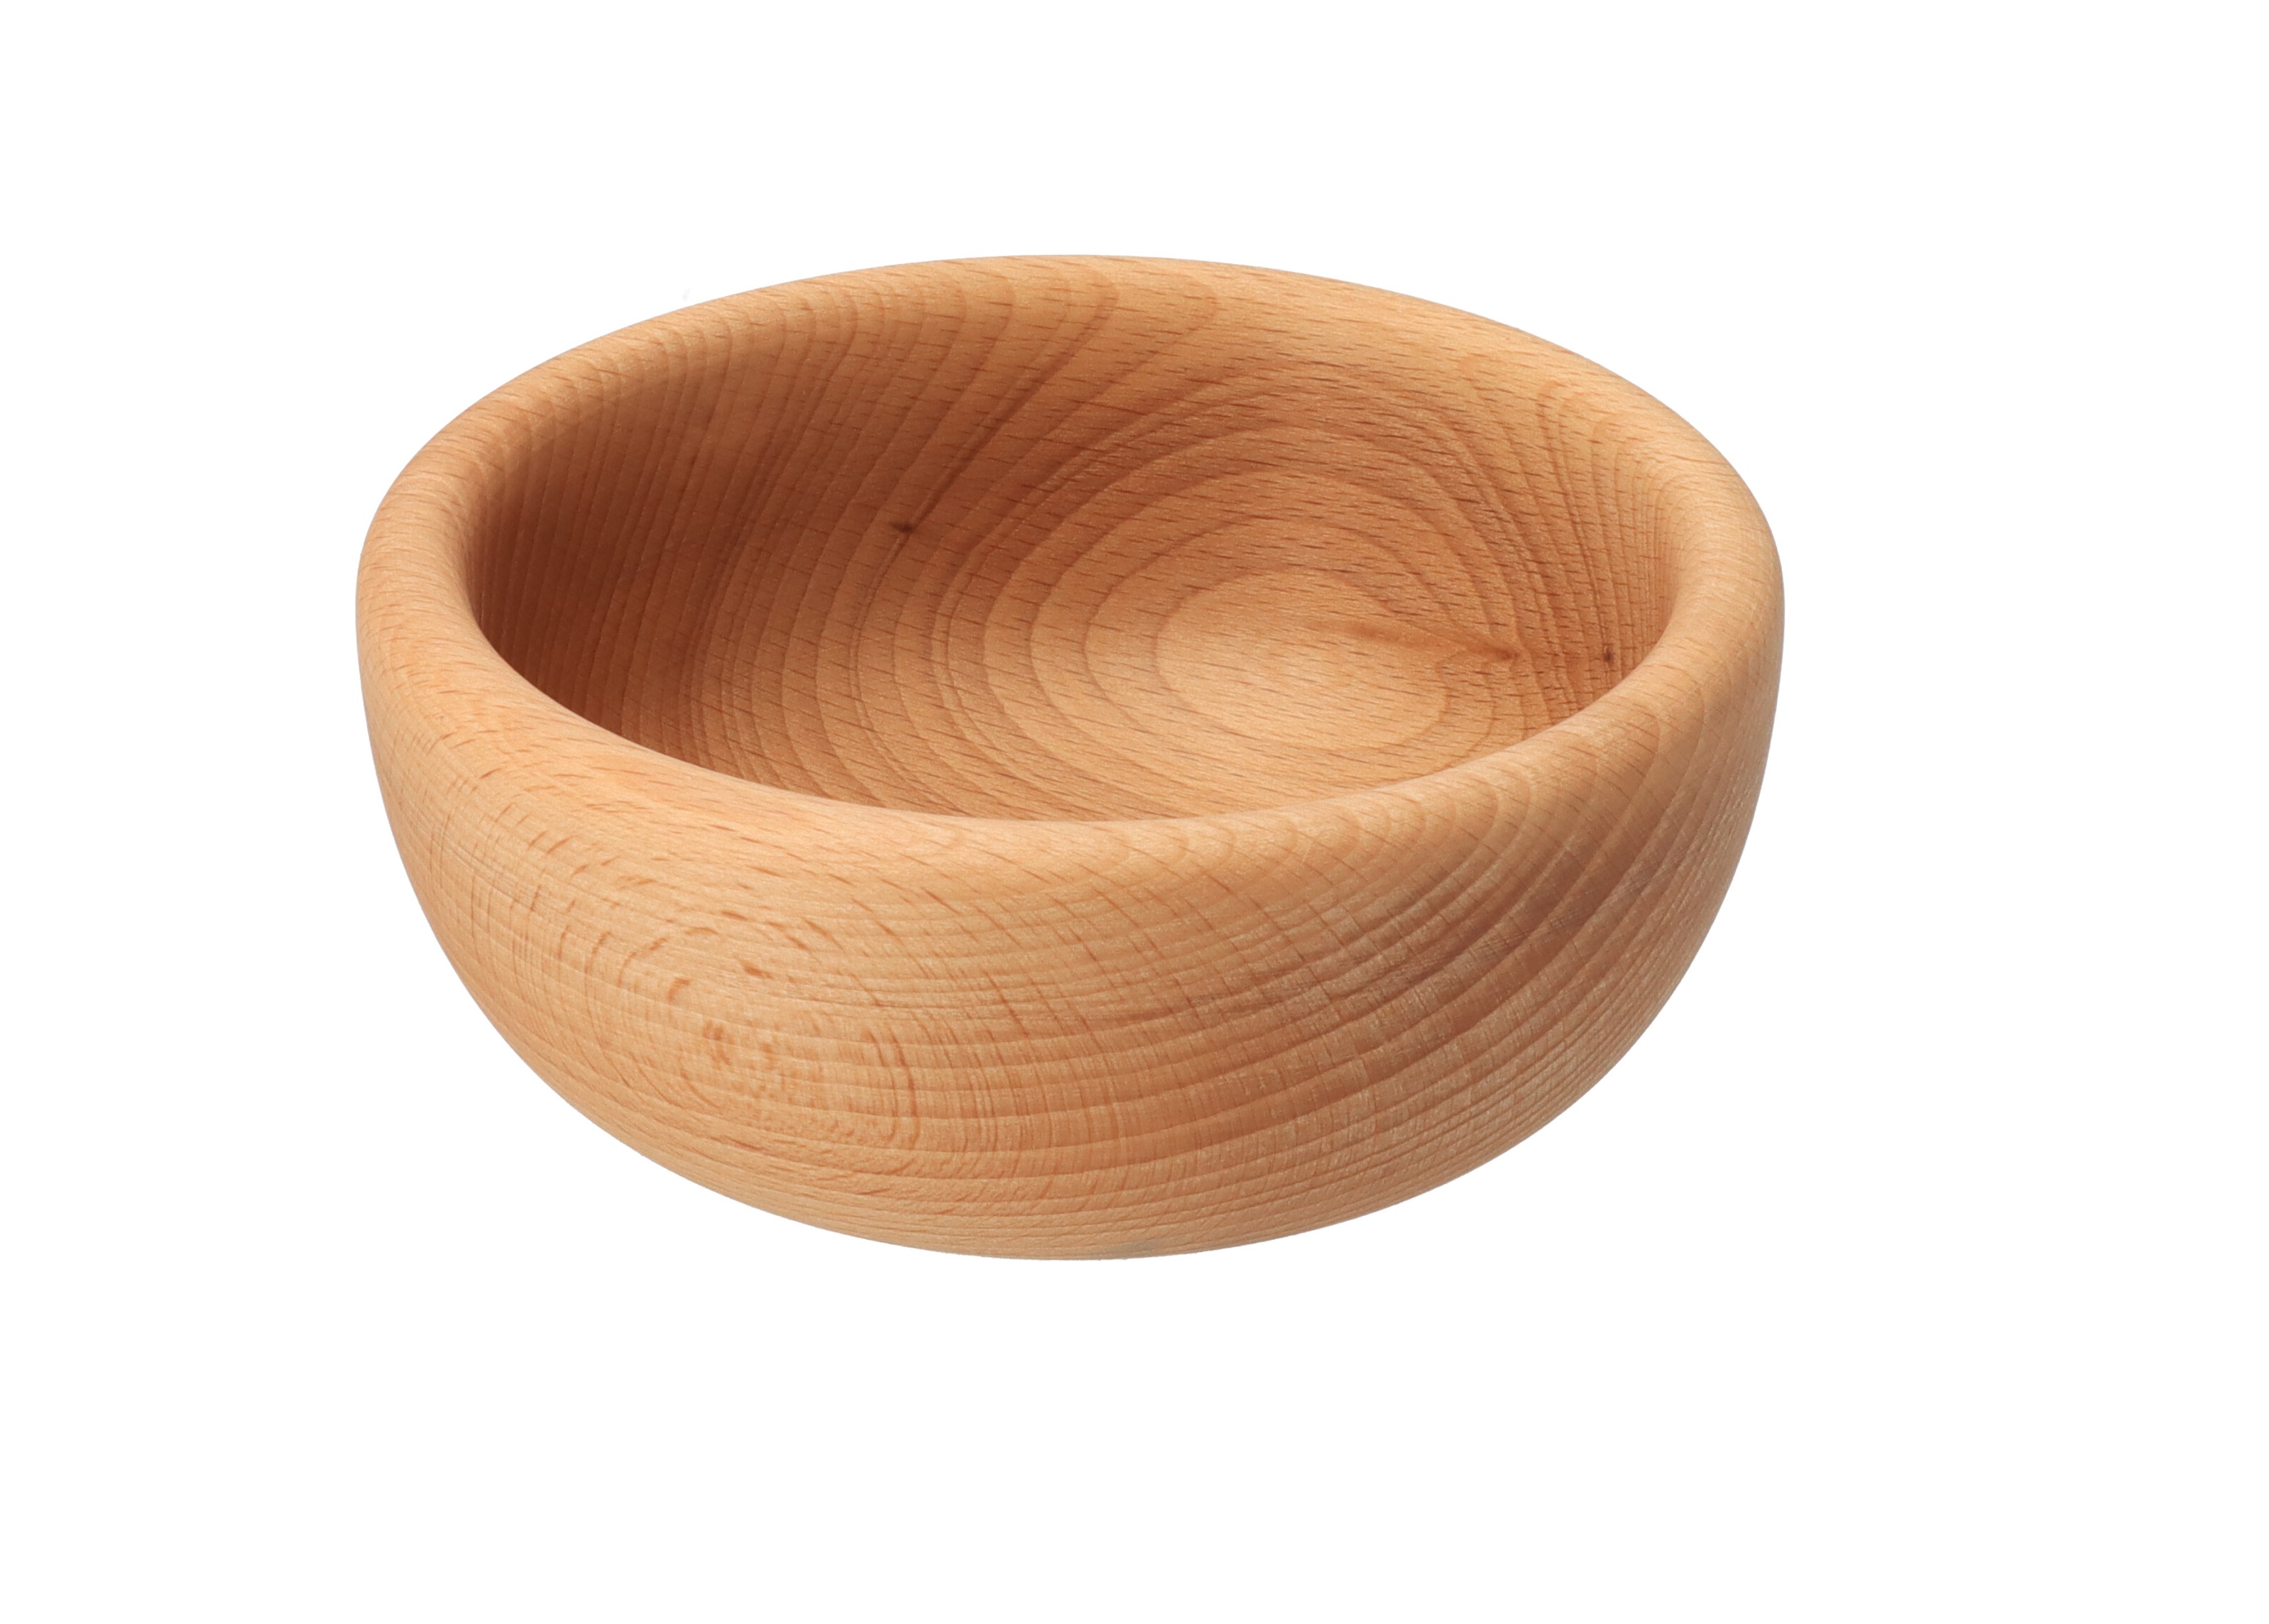 Dřevěná miska 14 cm